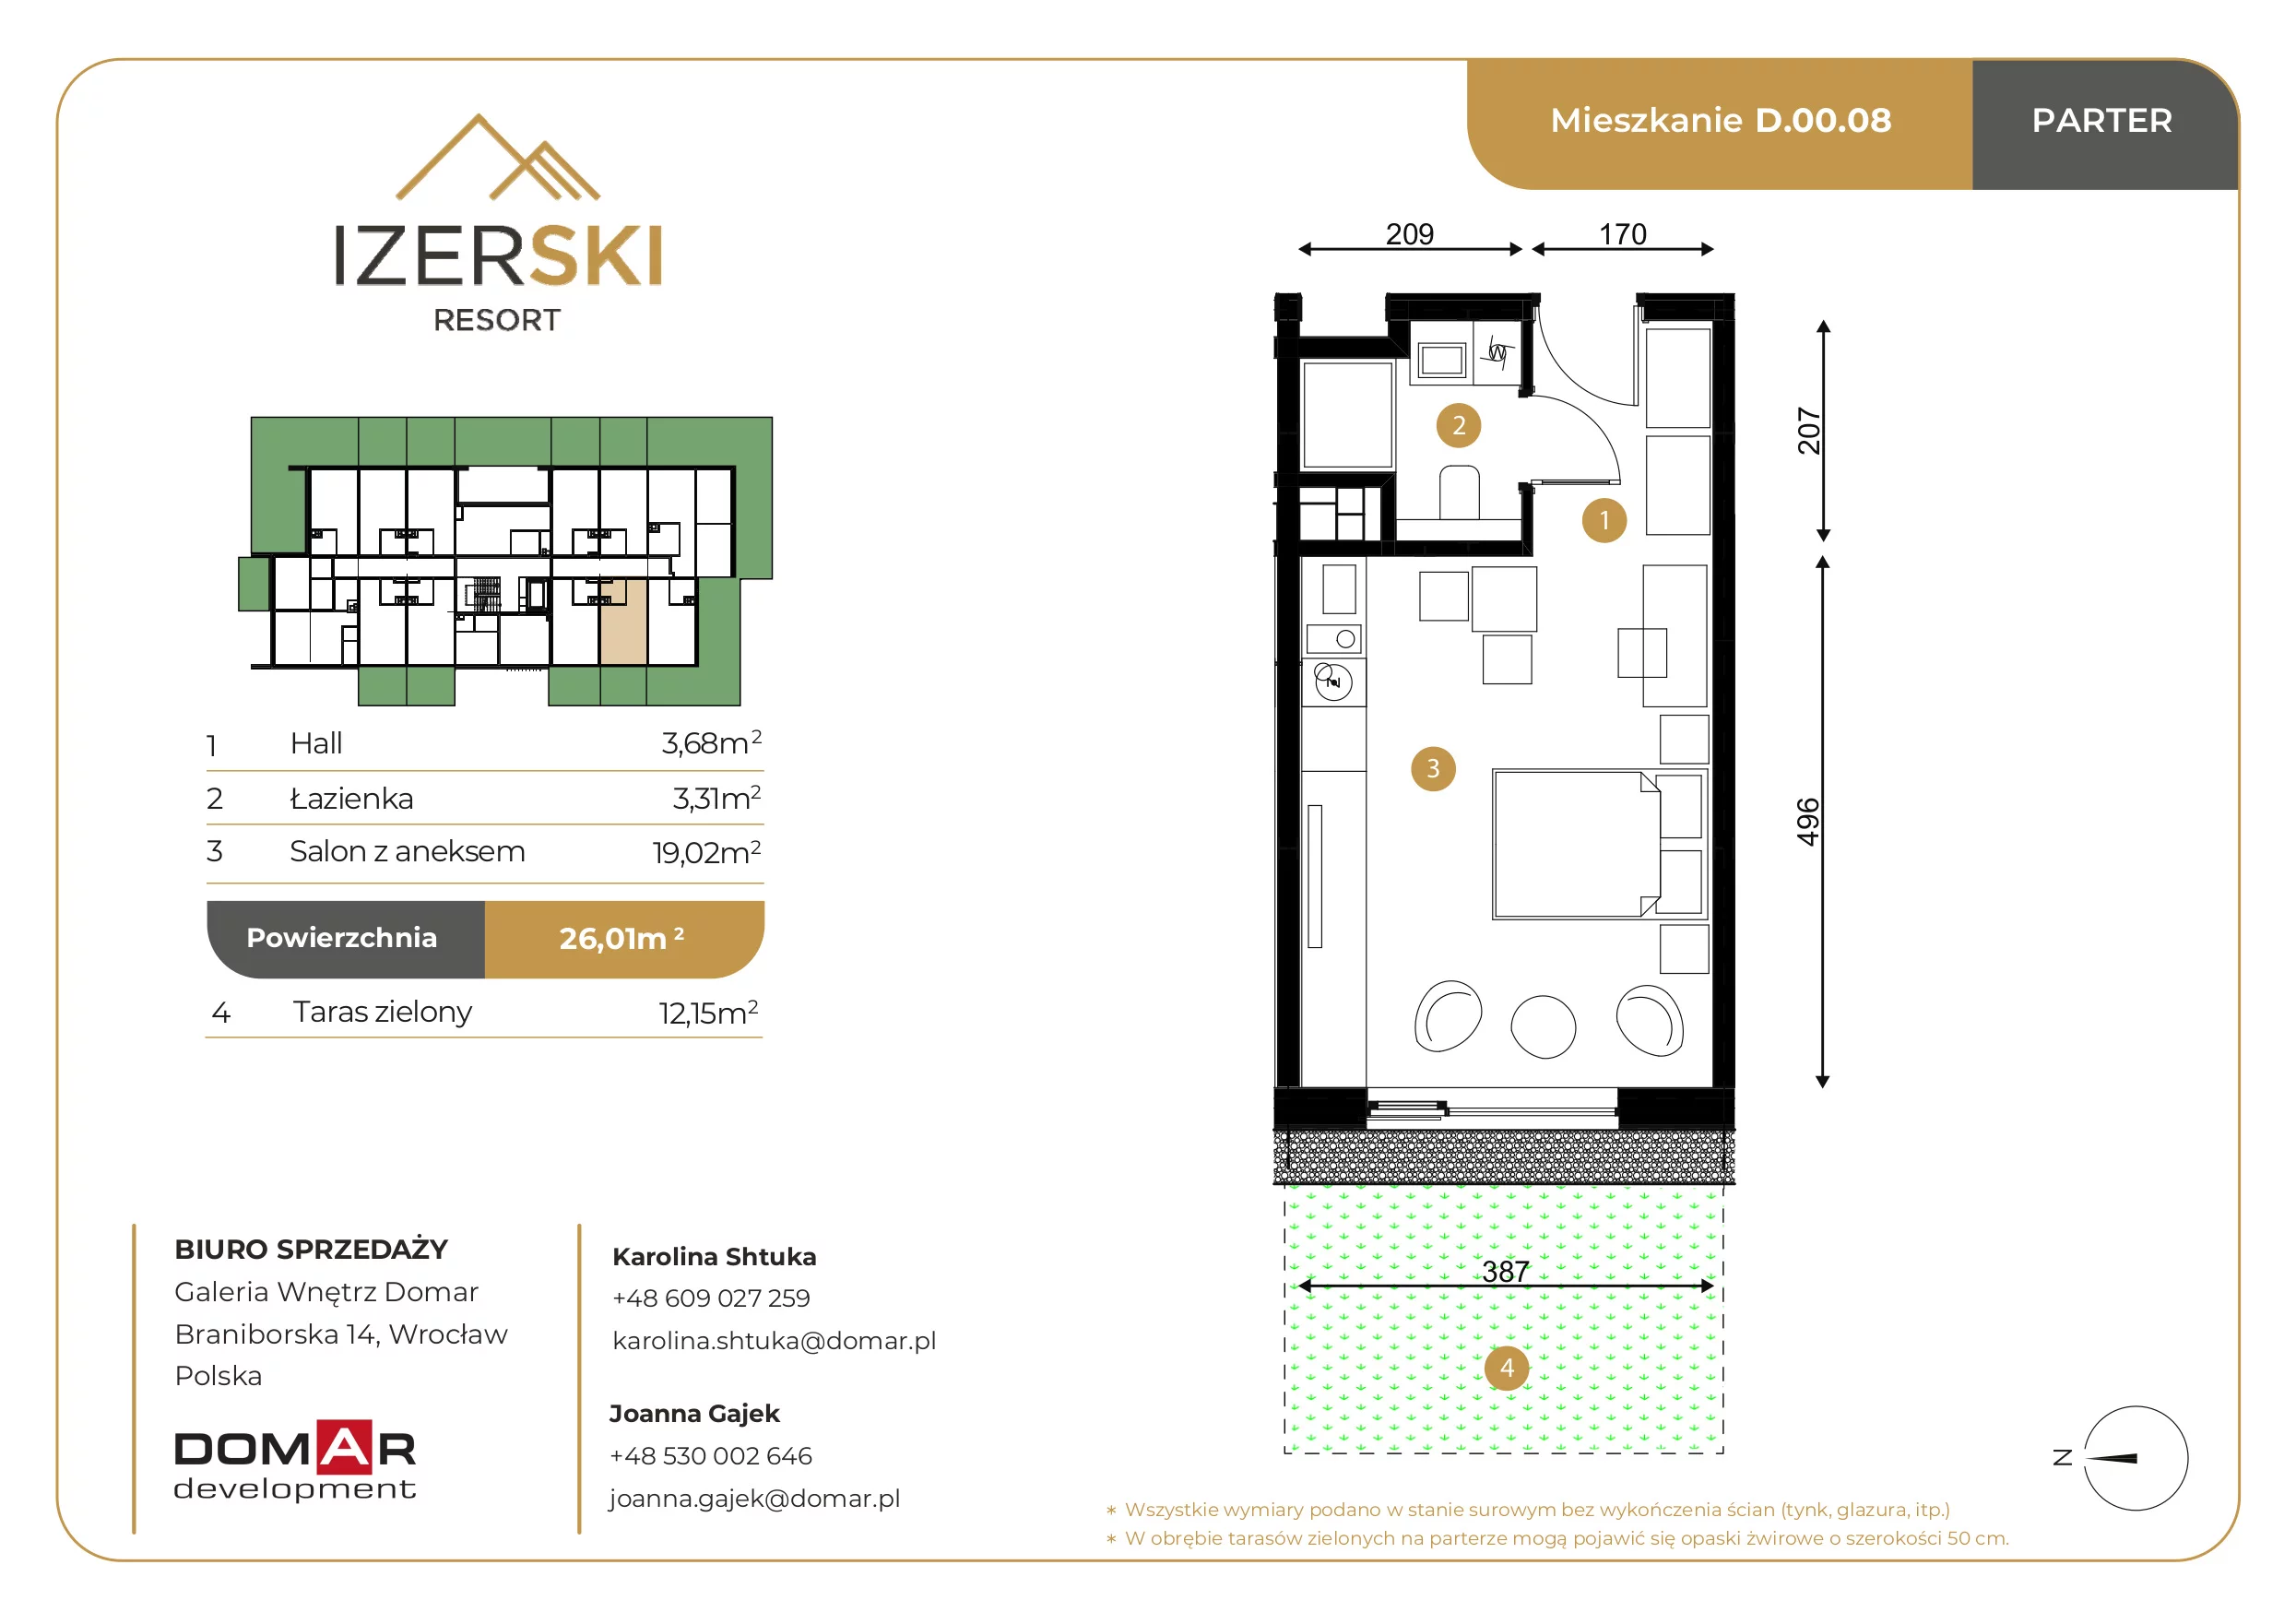 Apartament inwestycyjny 26,01 m², parter, oferta nr D.00.08, IzerSKI Resort, Świeradów-Zdrój, ul. Jana Kilińskiego 2